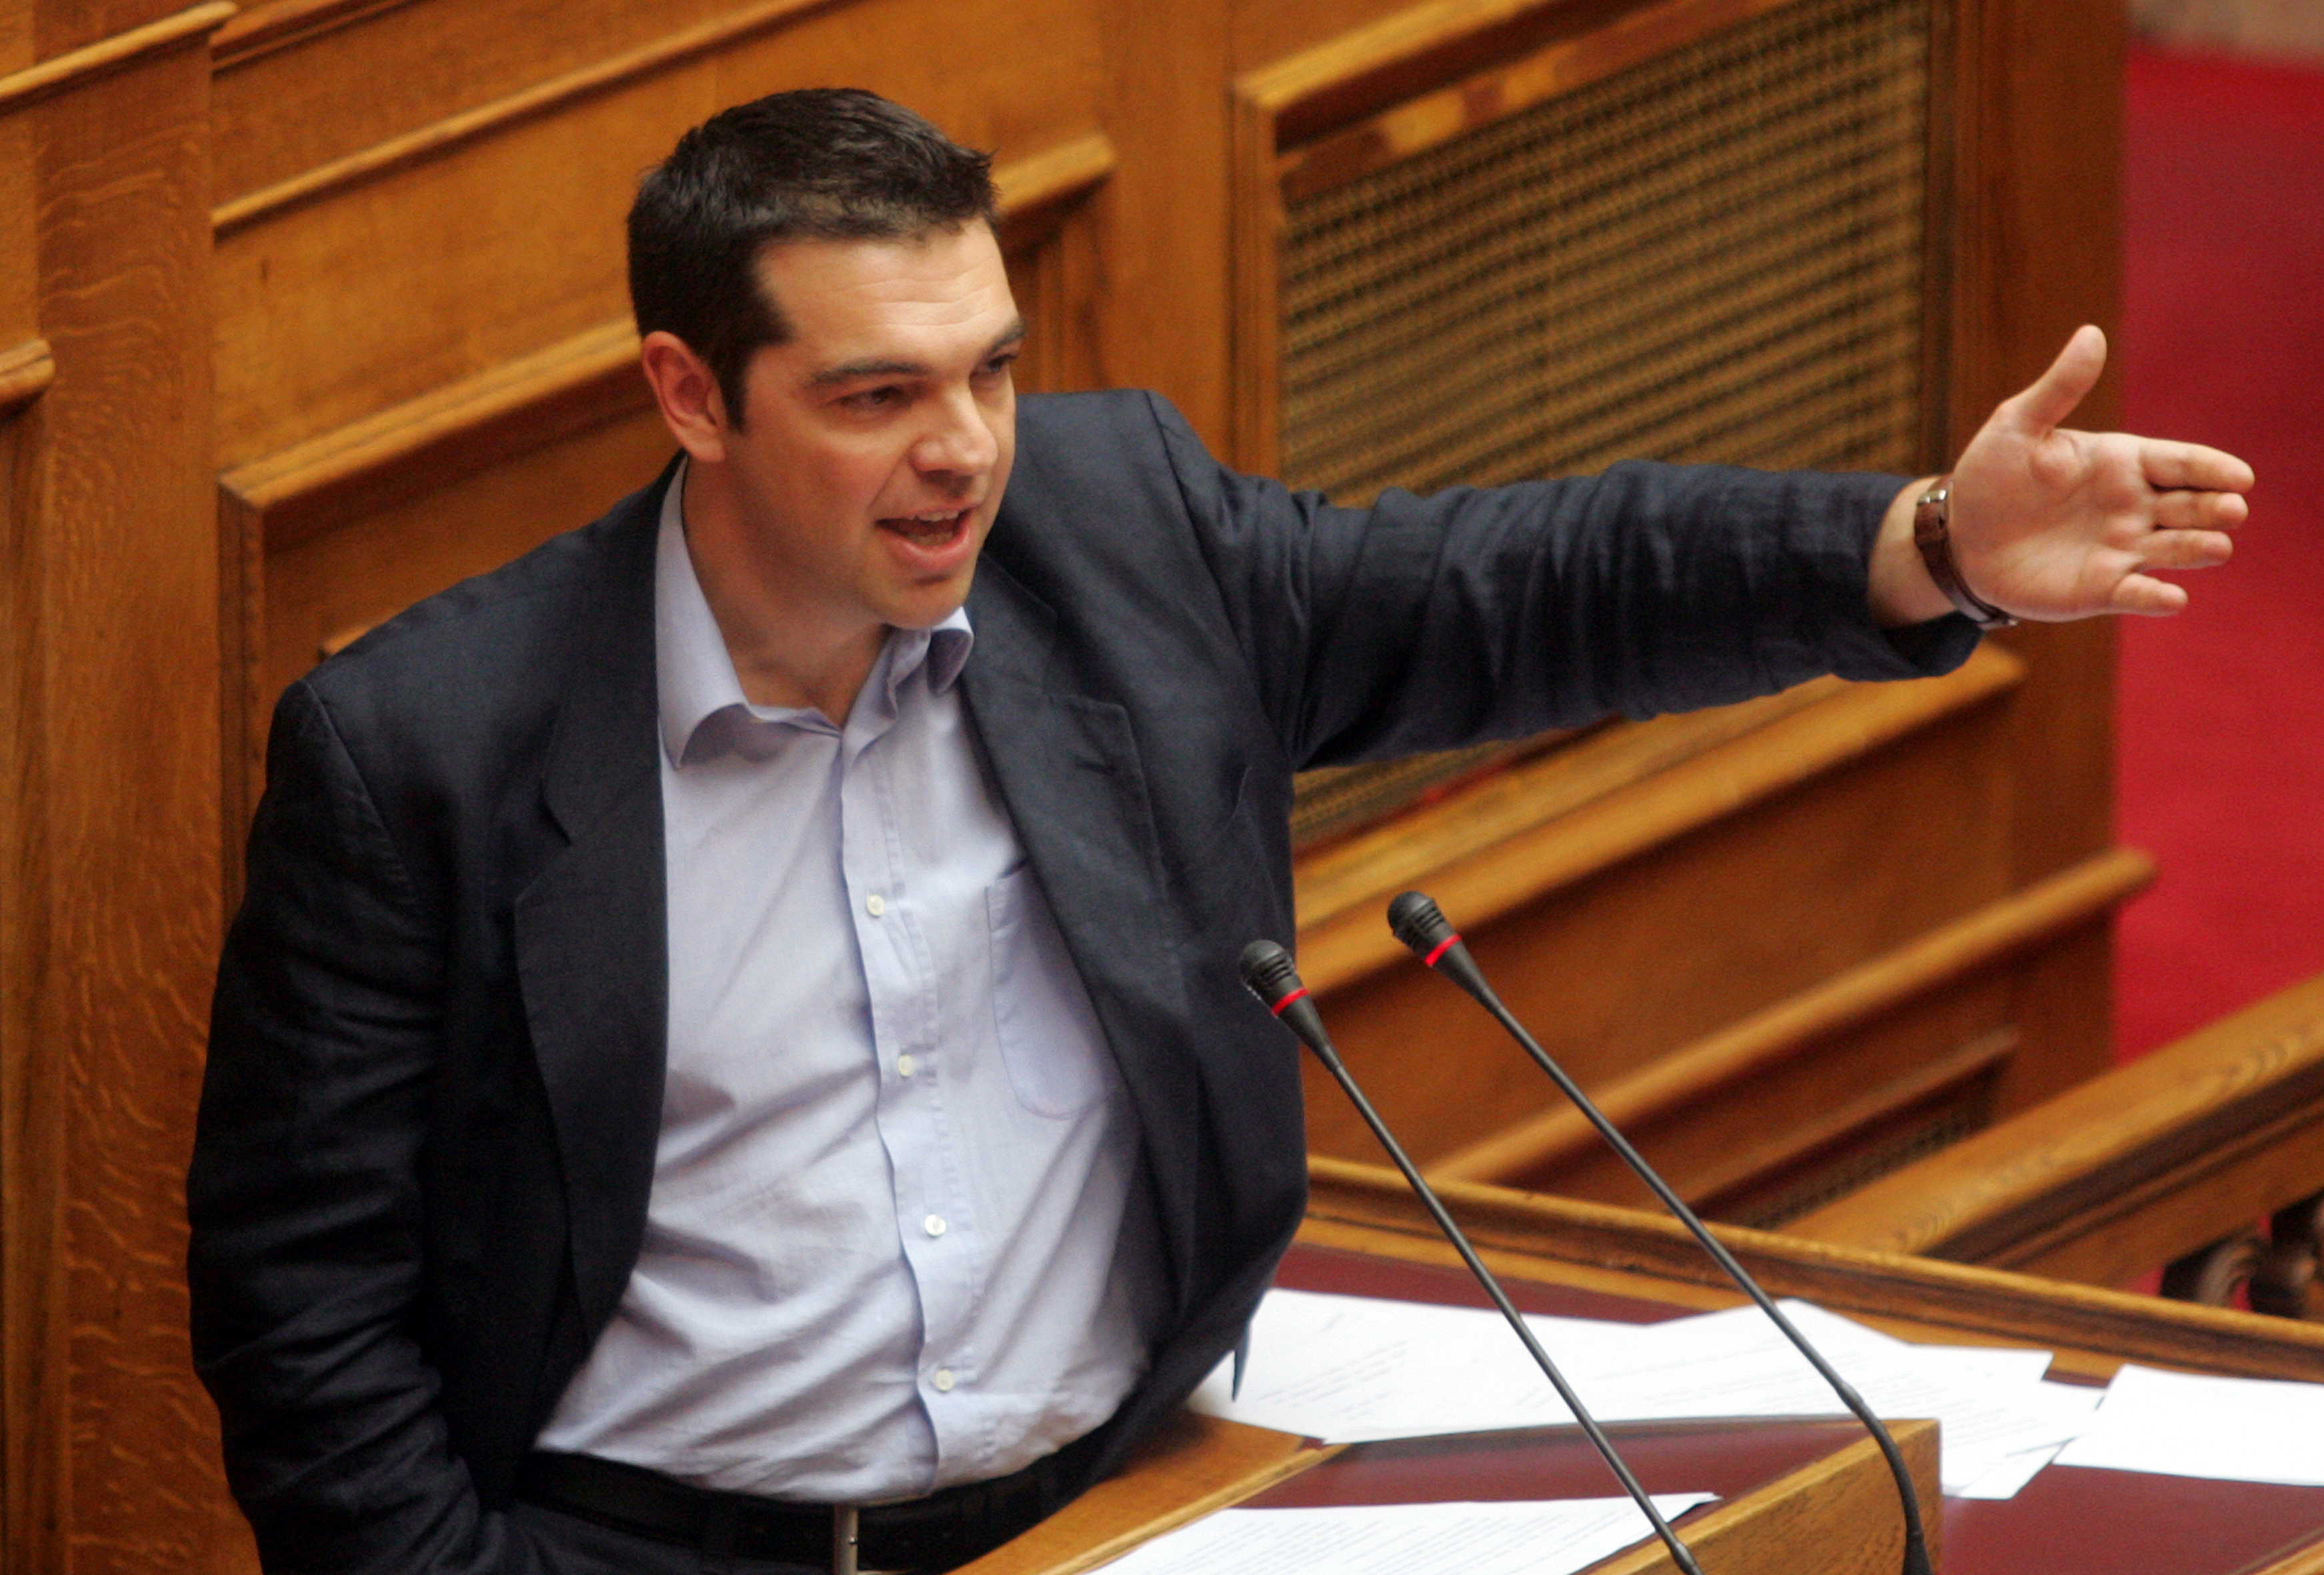 Προς αδιέξοδο οι διαπραγματεύσεις με τα τεχνικά κλιμάκια στην Αθήνα